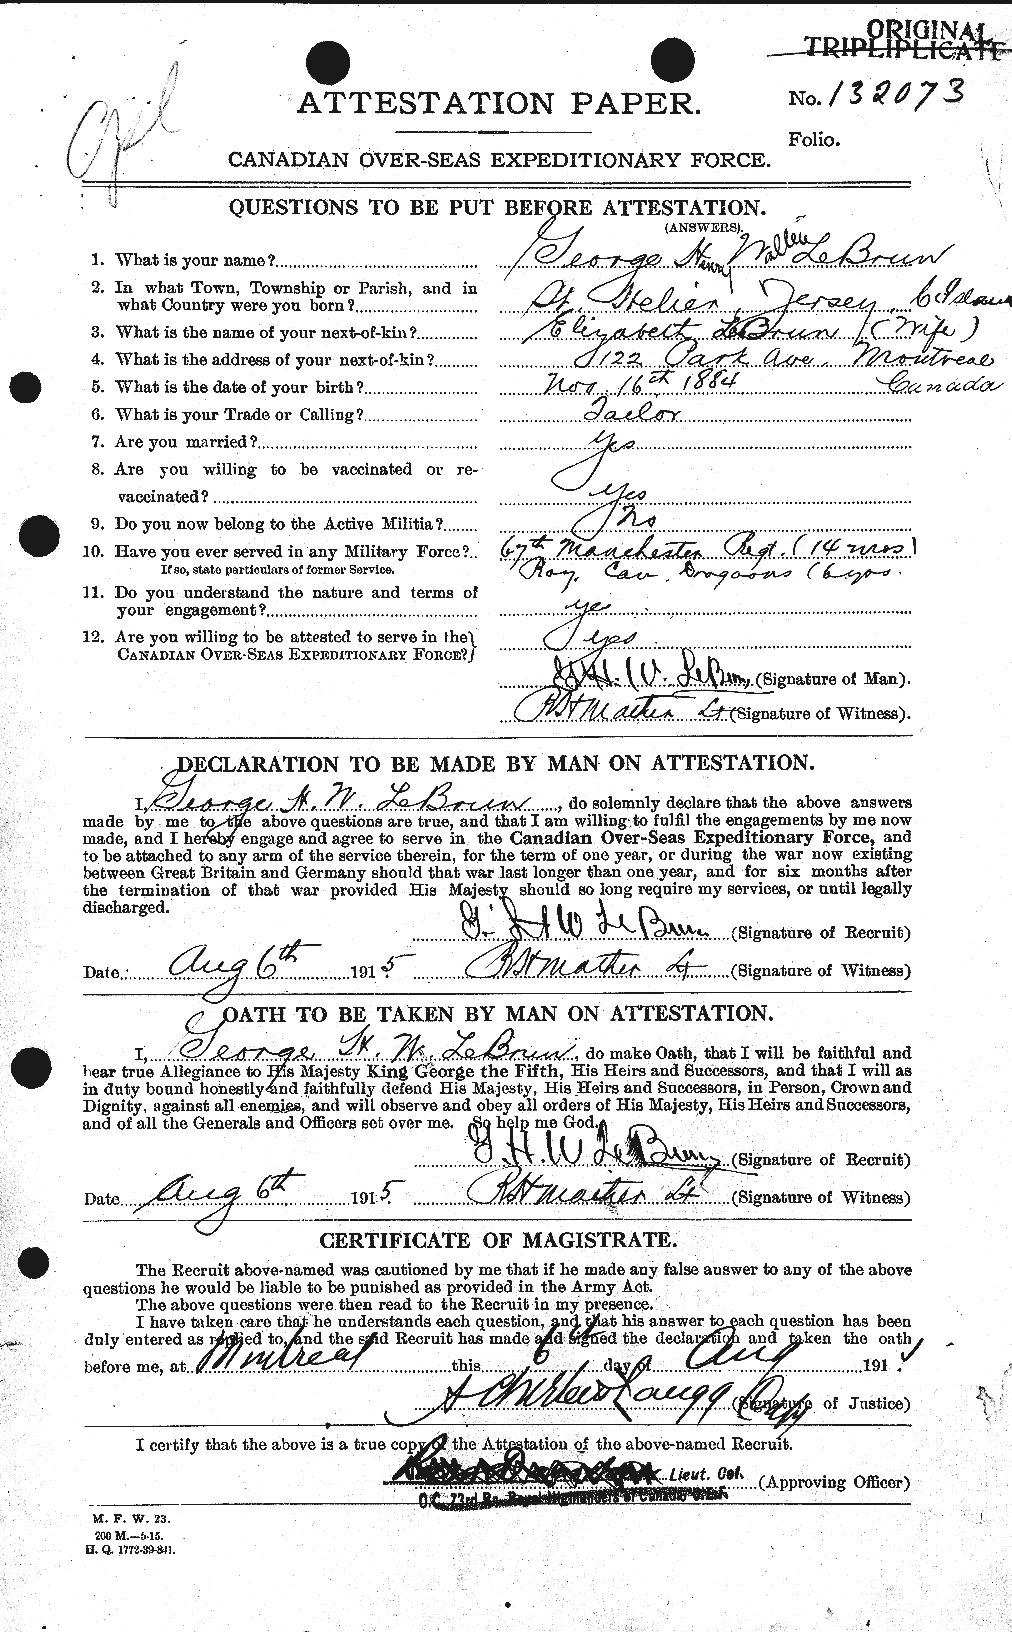 Dossiers du Personnel de la Première Guerre mondiale - CEC 461562a